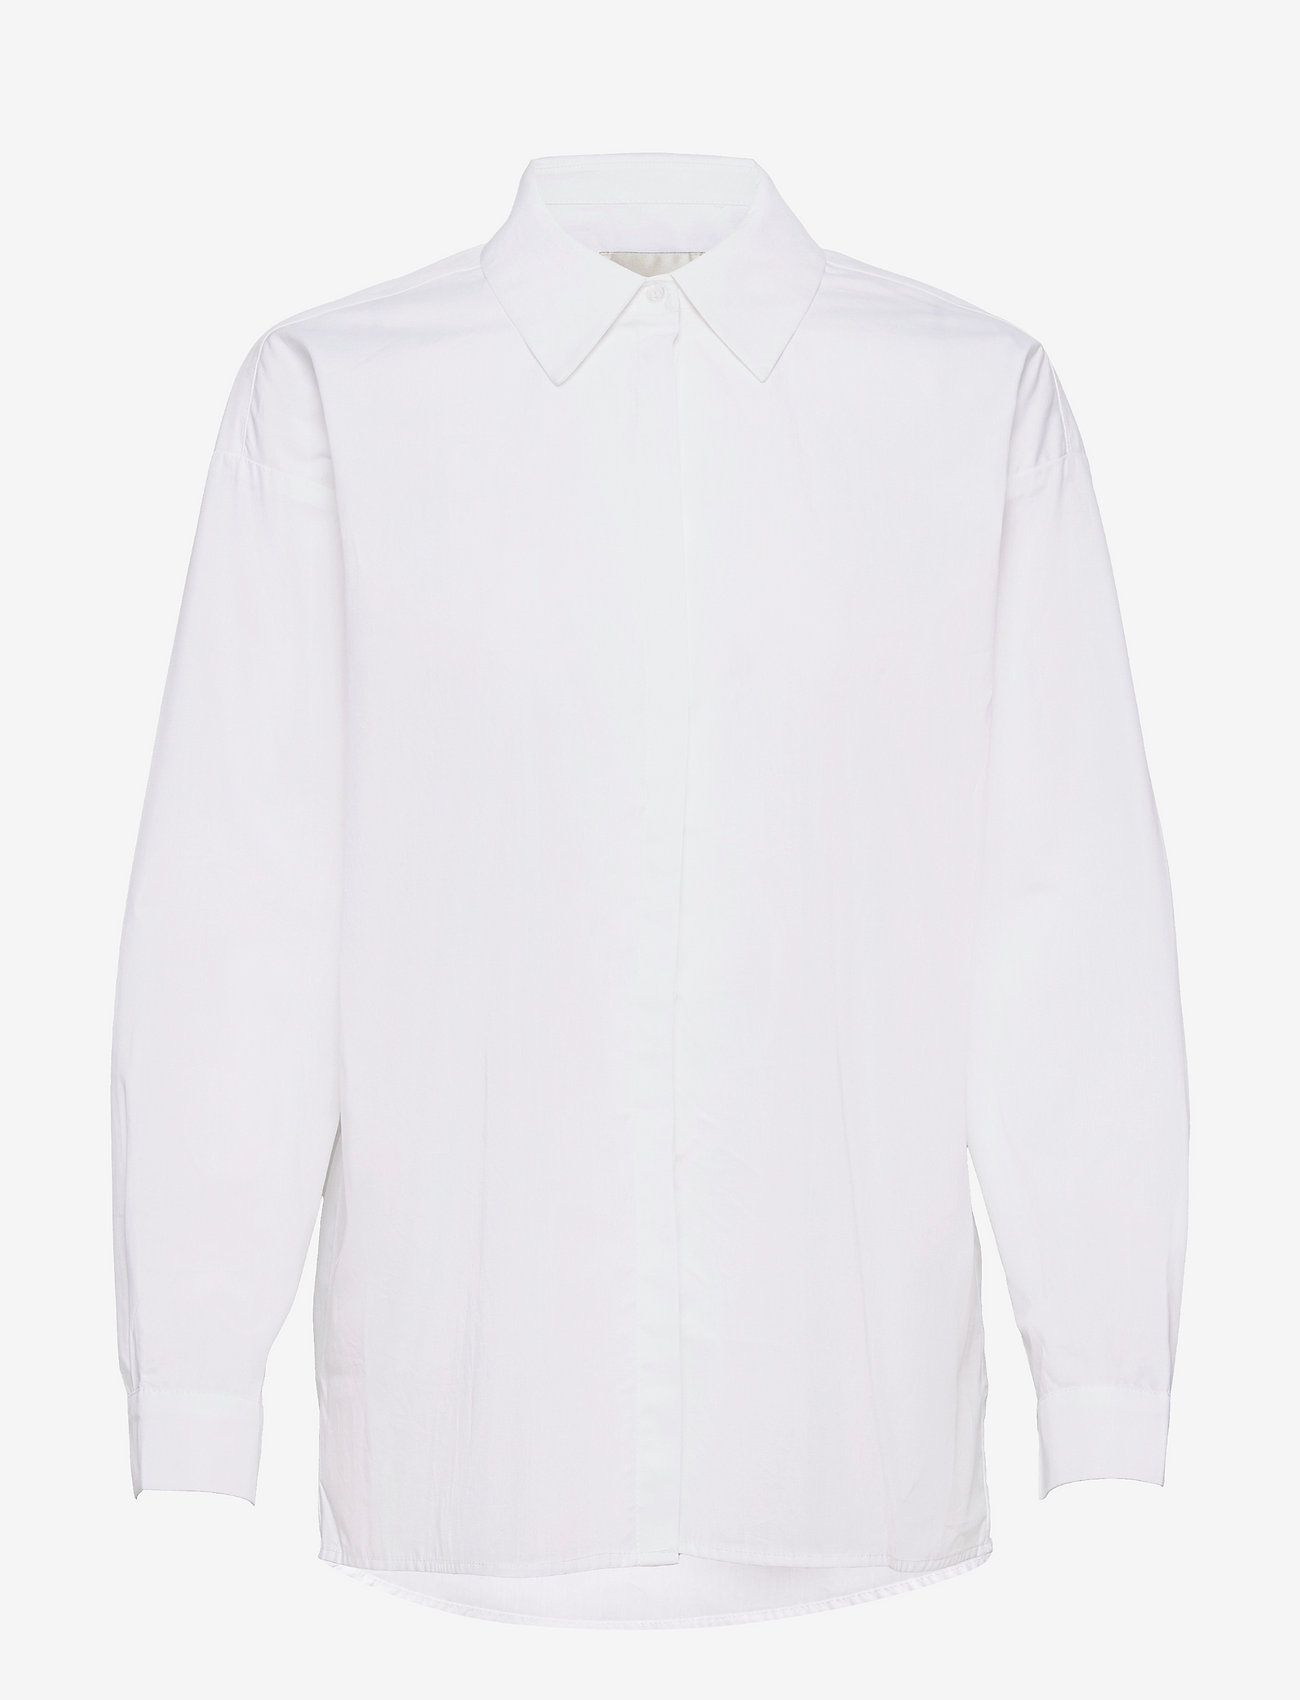 My Essential Wardrobe - 03 THE SHIRT - marškiniai ilgomis rankovėmis - bright white - 0